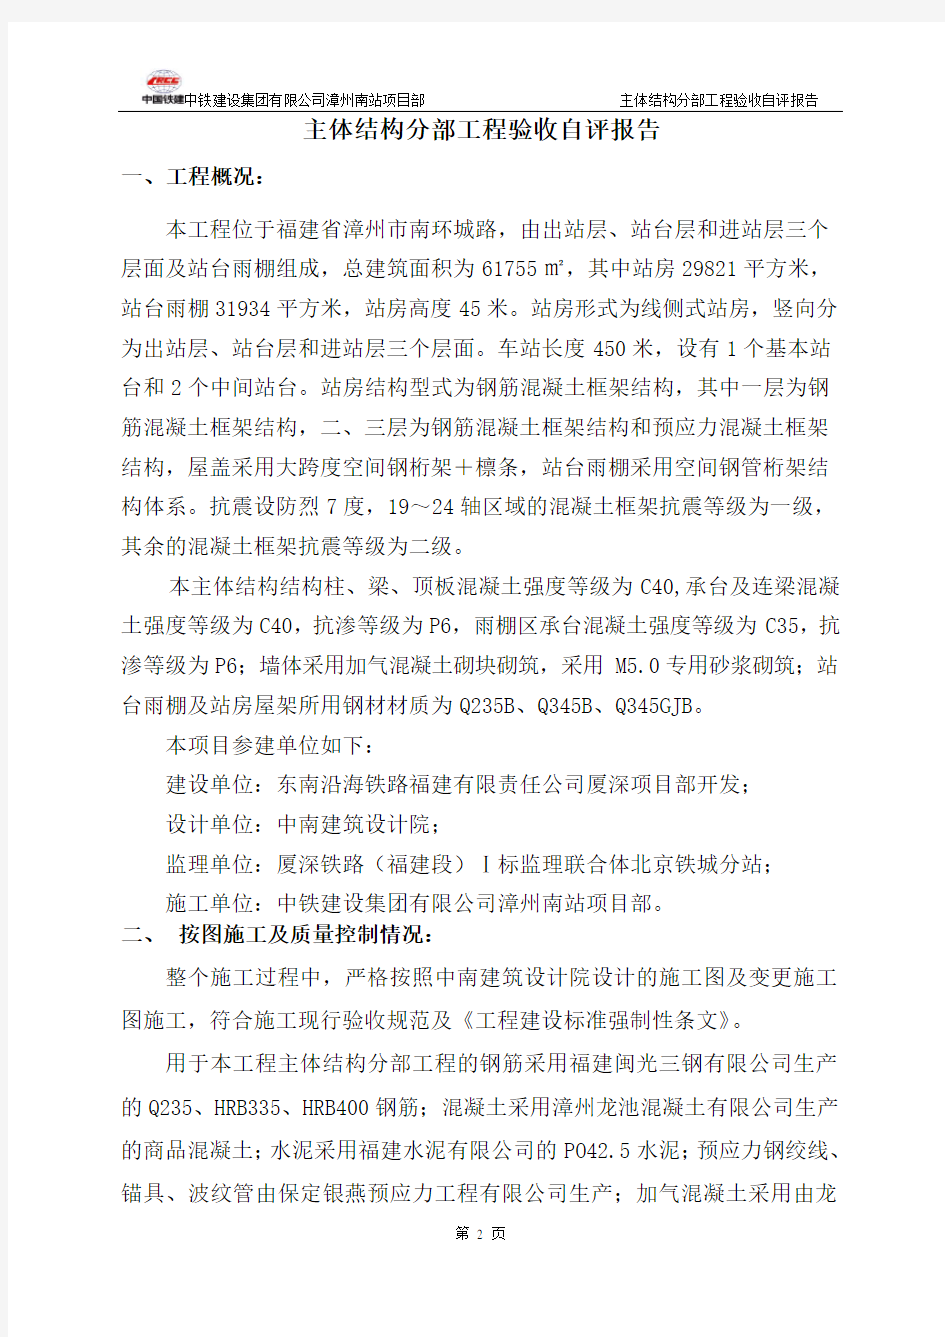 漳州南站主体结构验收自评报告